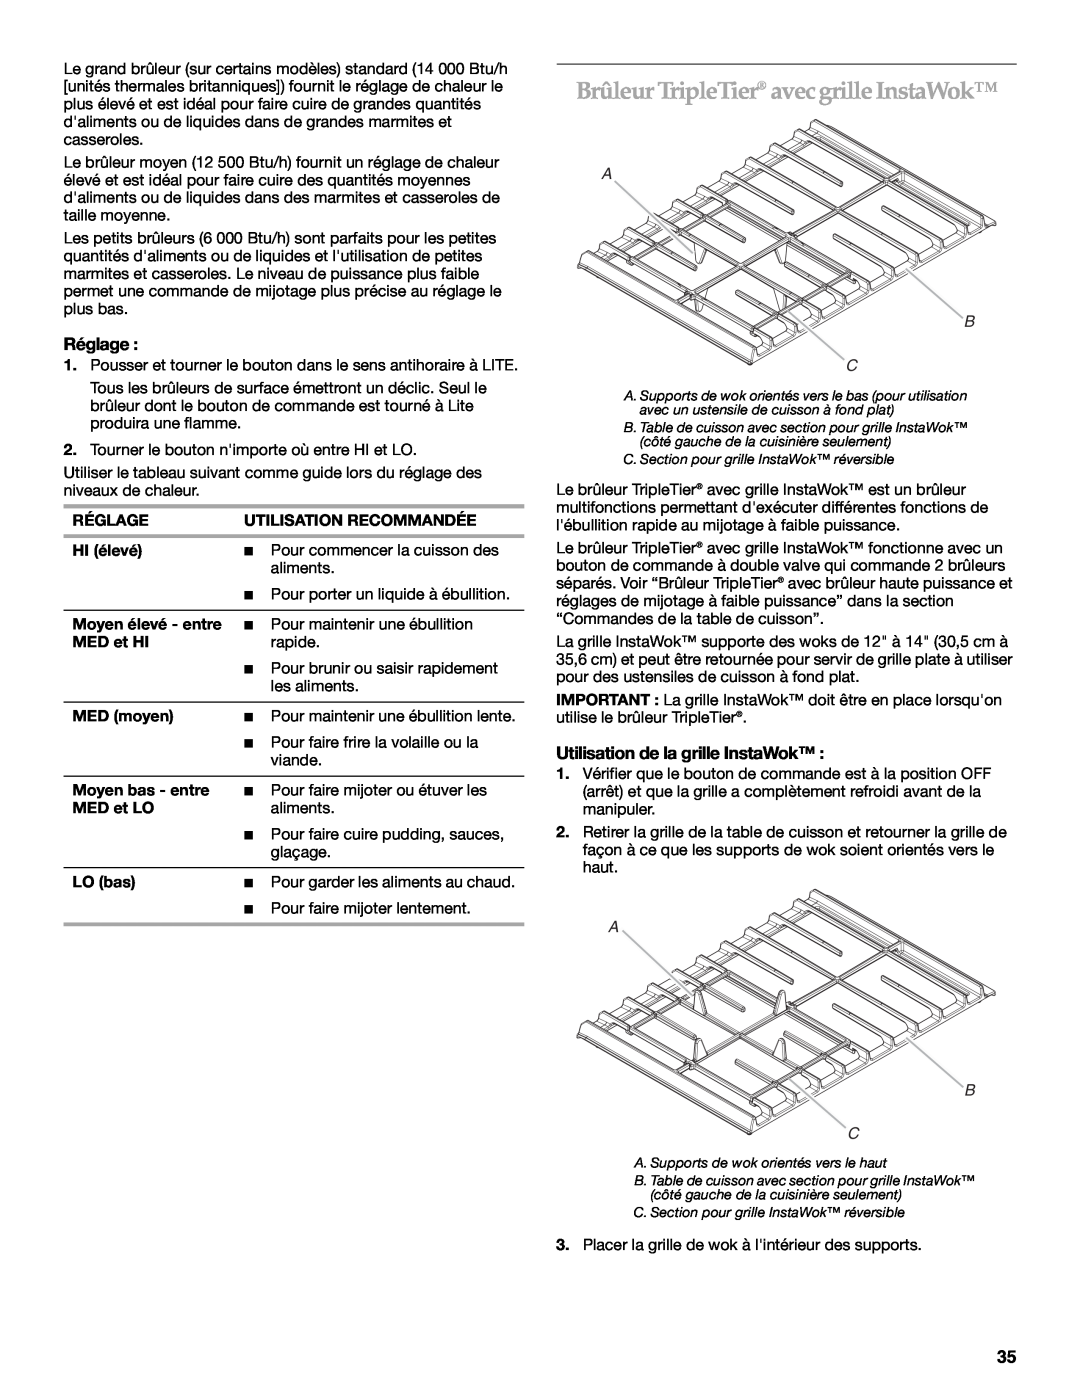 KitchenAid KGRS807, KGSS907 manual Brûleur TripleTier avecgrille InstaWok, Réglage, Utilisation de la grille InstaWok, A B C 